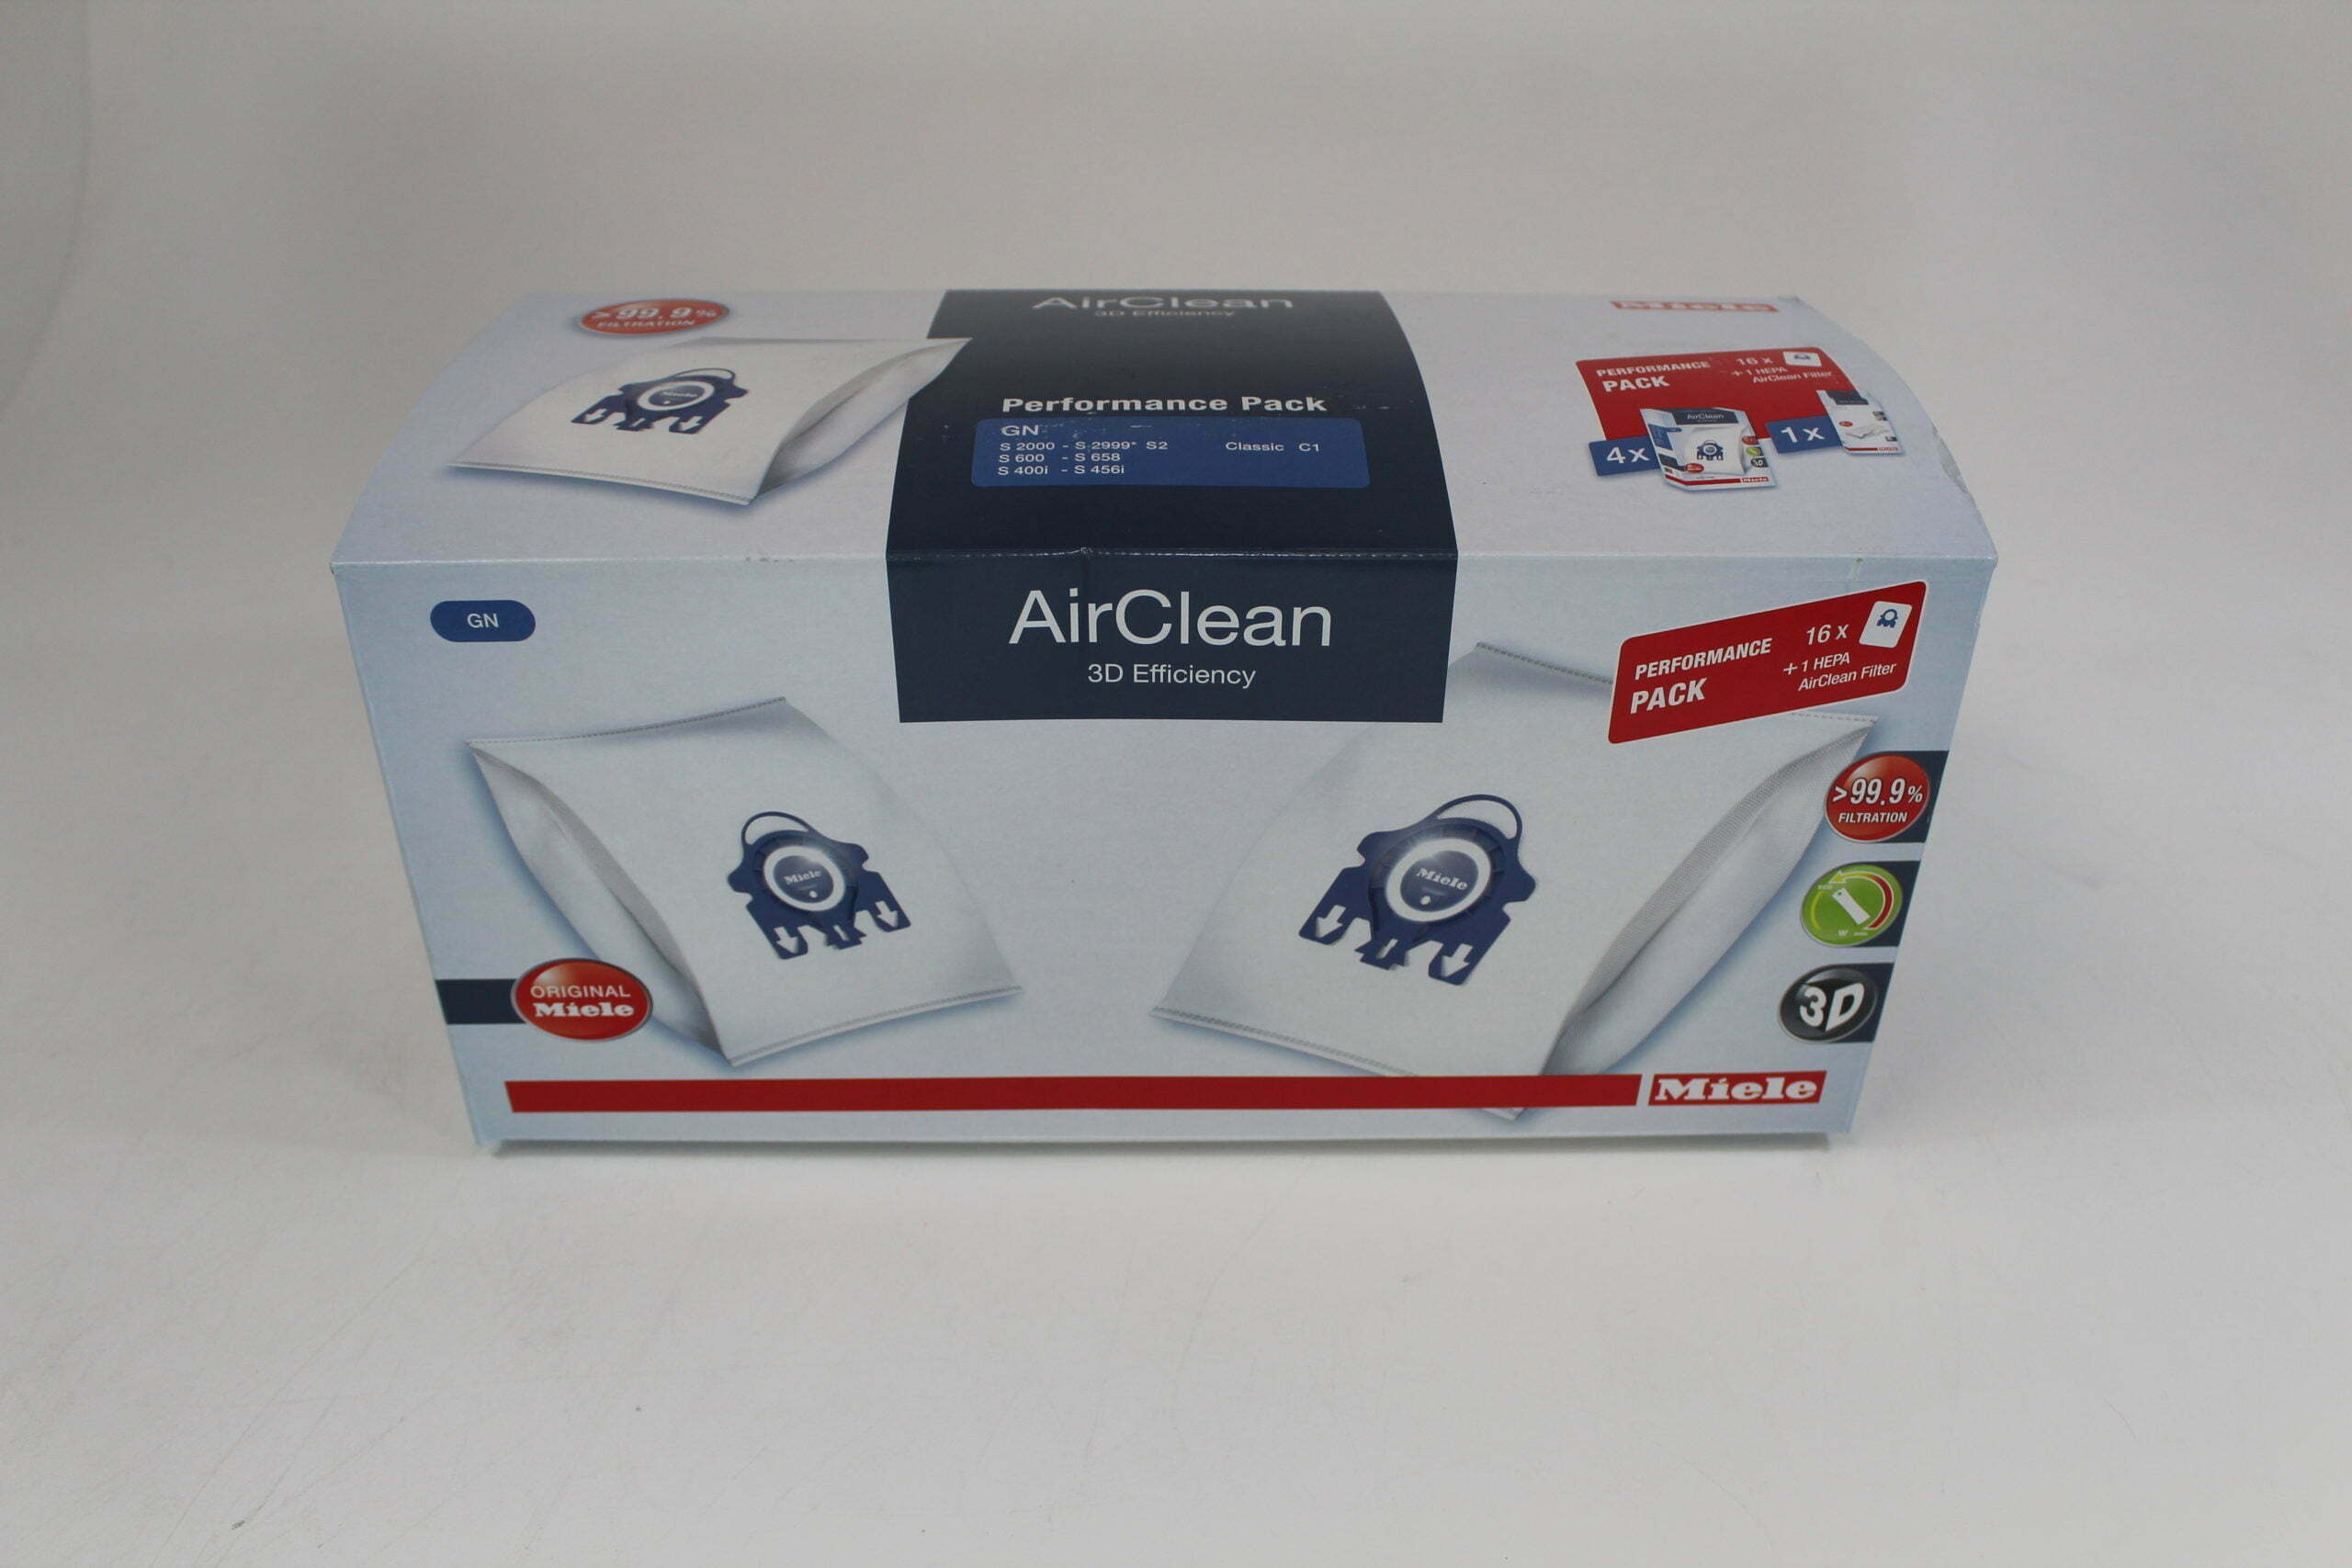  Miele AirClean 3D GN Vacuum Cleaner Bags, White, 1 Box